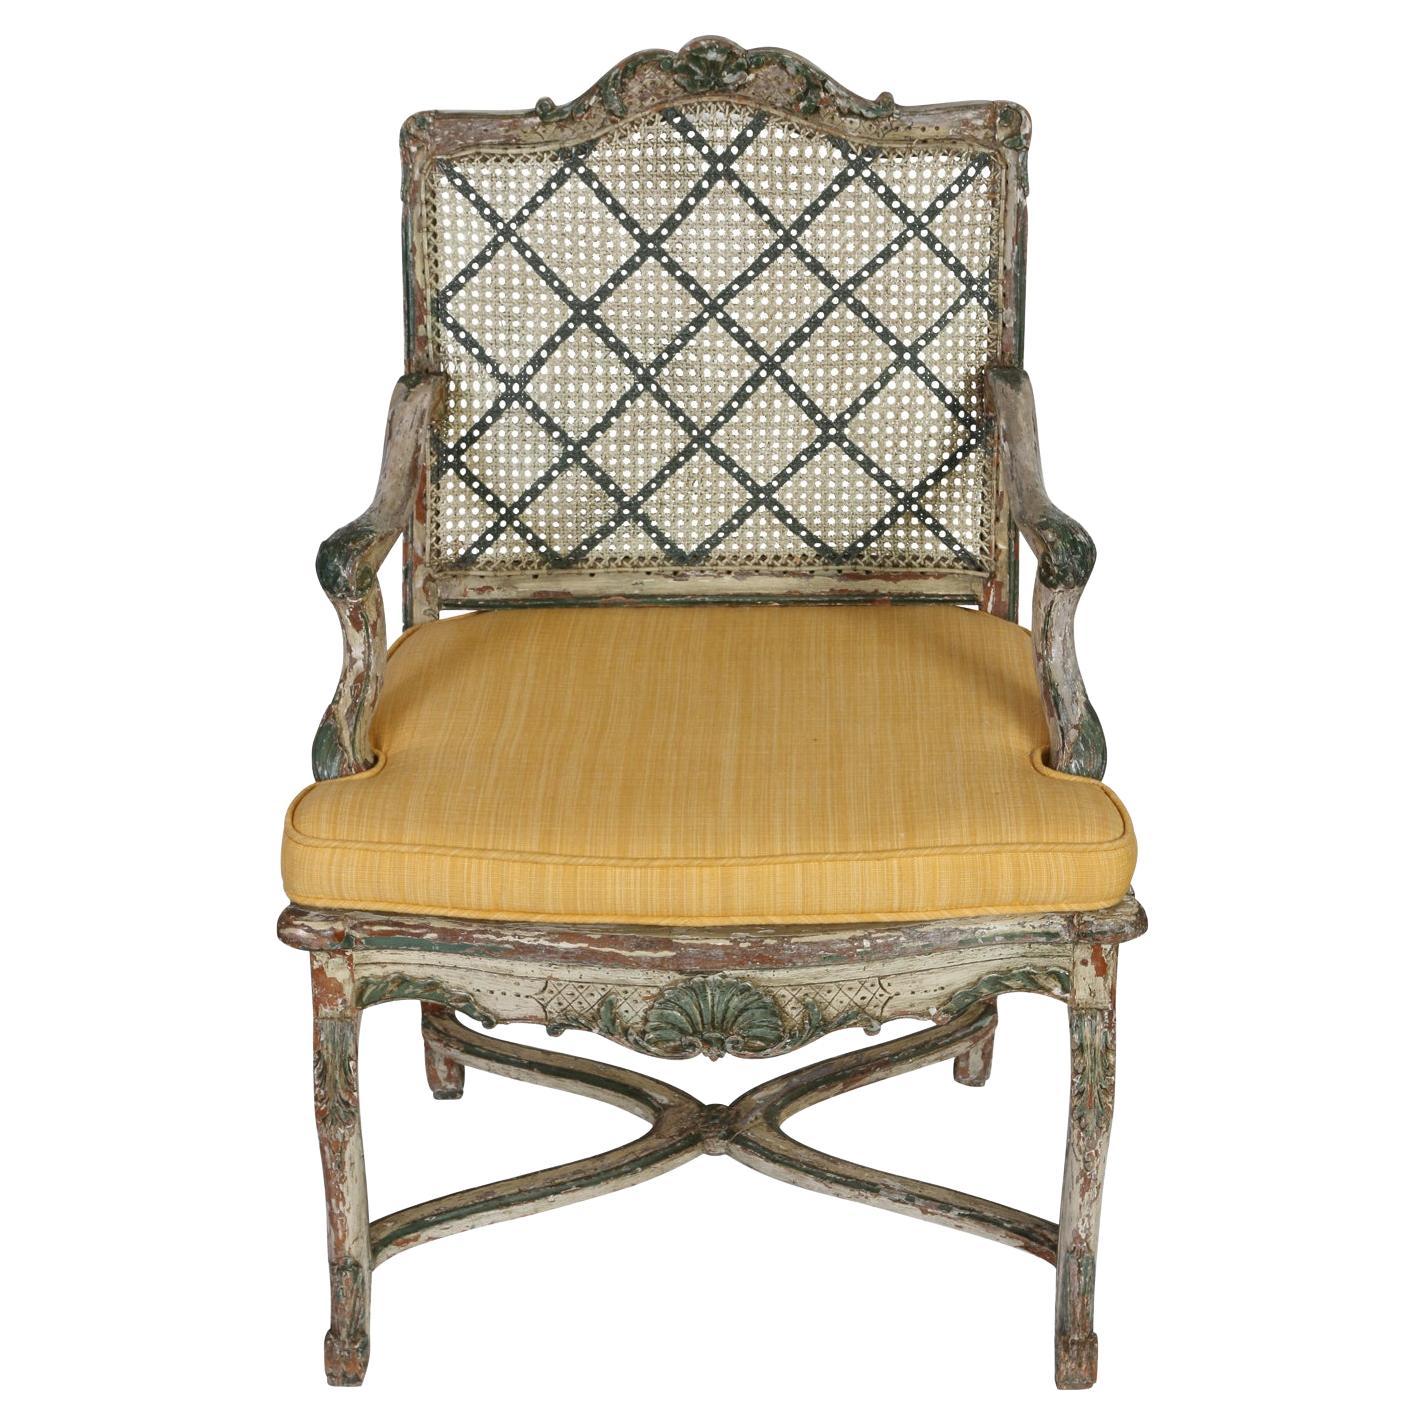 Fauteuil im Louis-XV-Stil mit lackierter Schilfrohrrückenlehne und gelbem Sitz